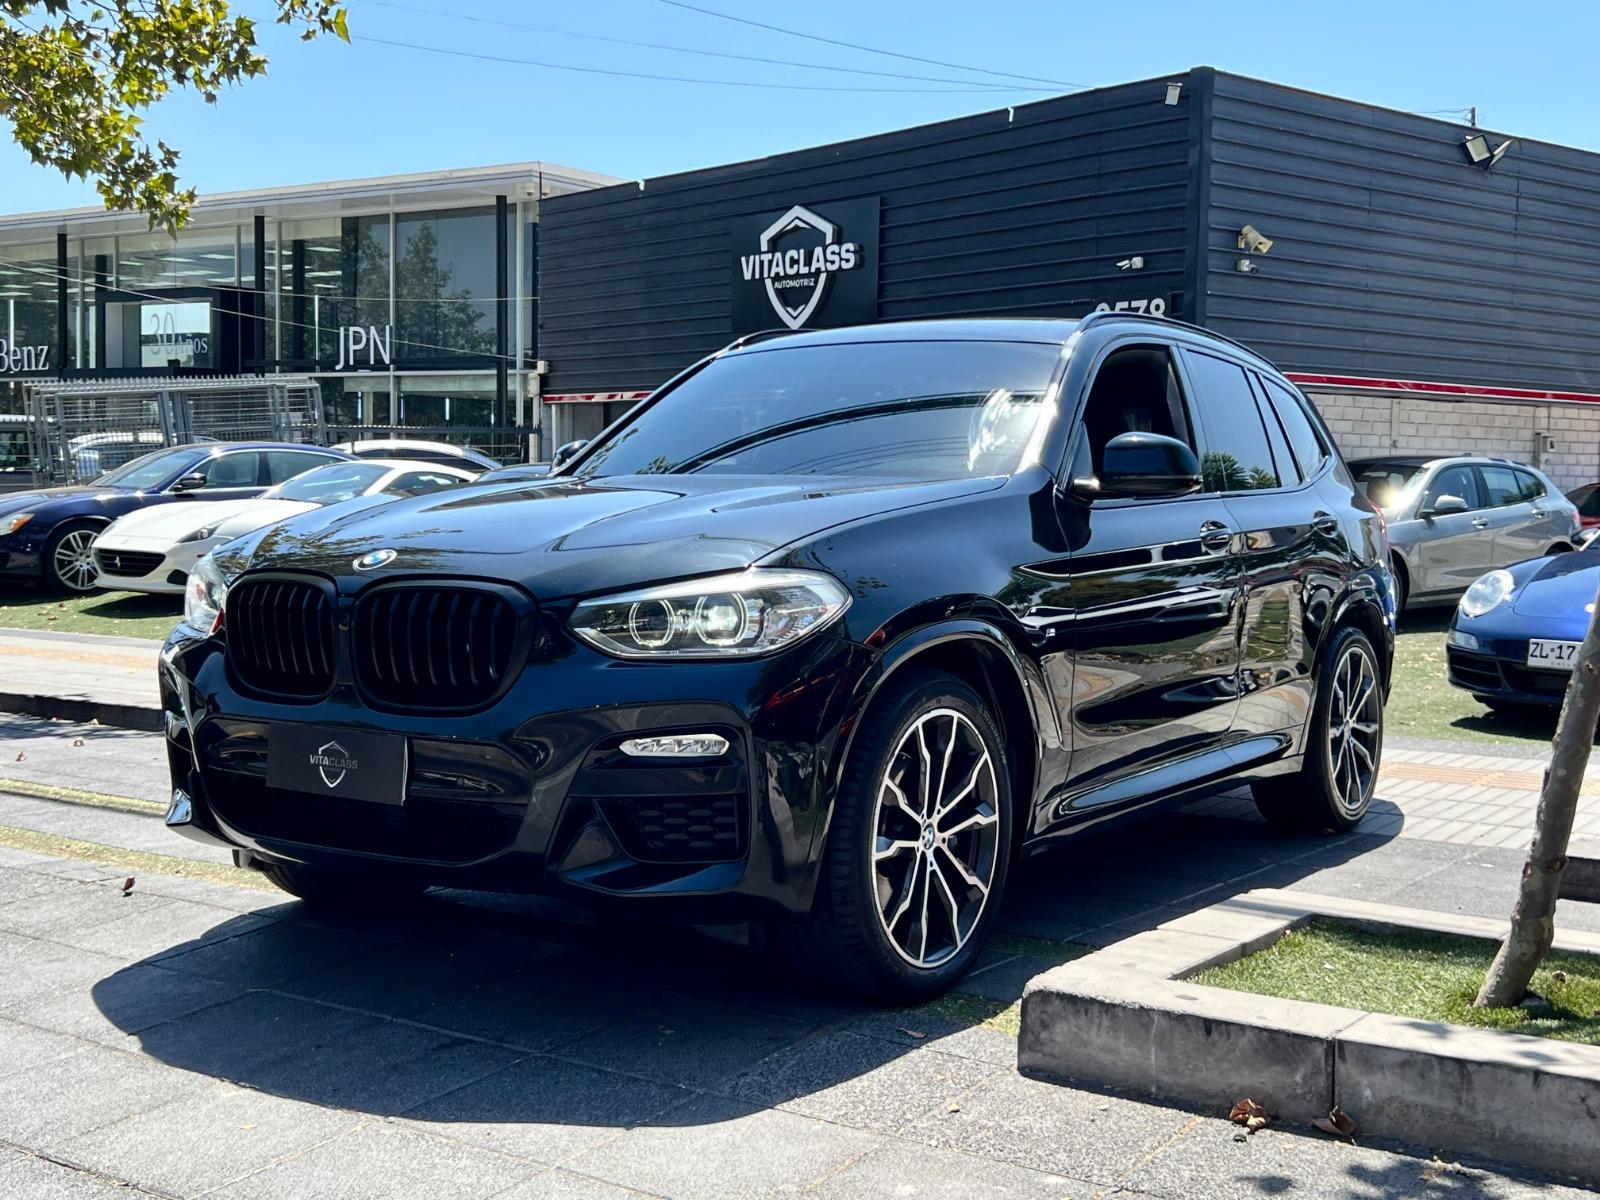 BMW X3 SPORT 2019 30i xDRIVE - 